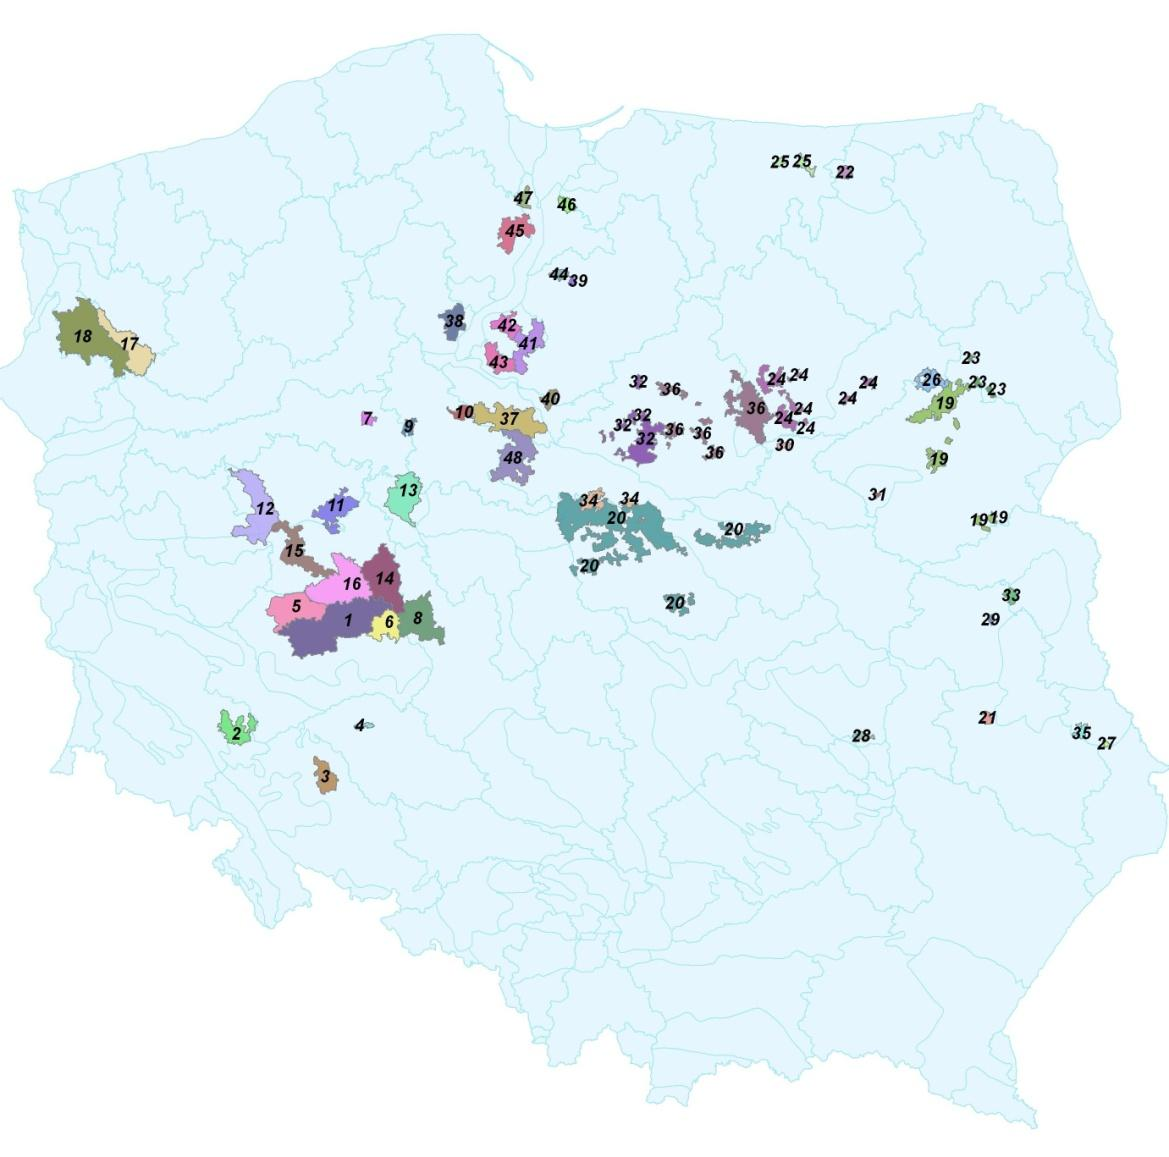 Mapy Polski z uwzględnieniem obszarów szczególnie